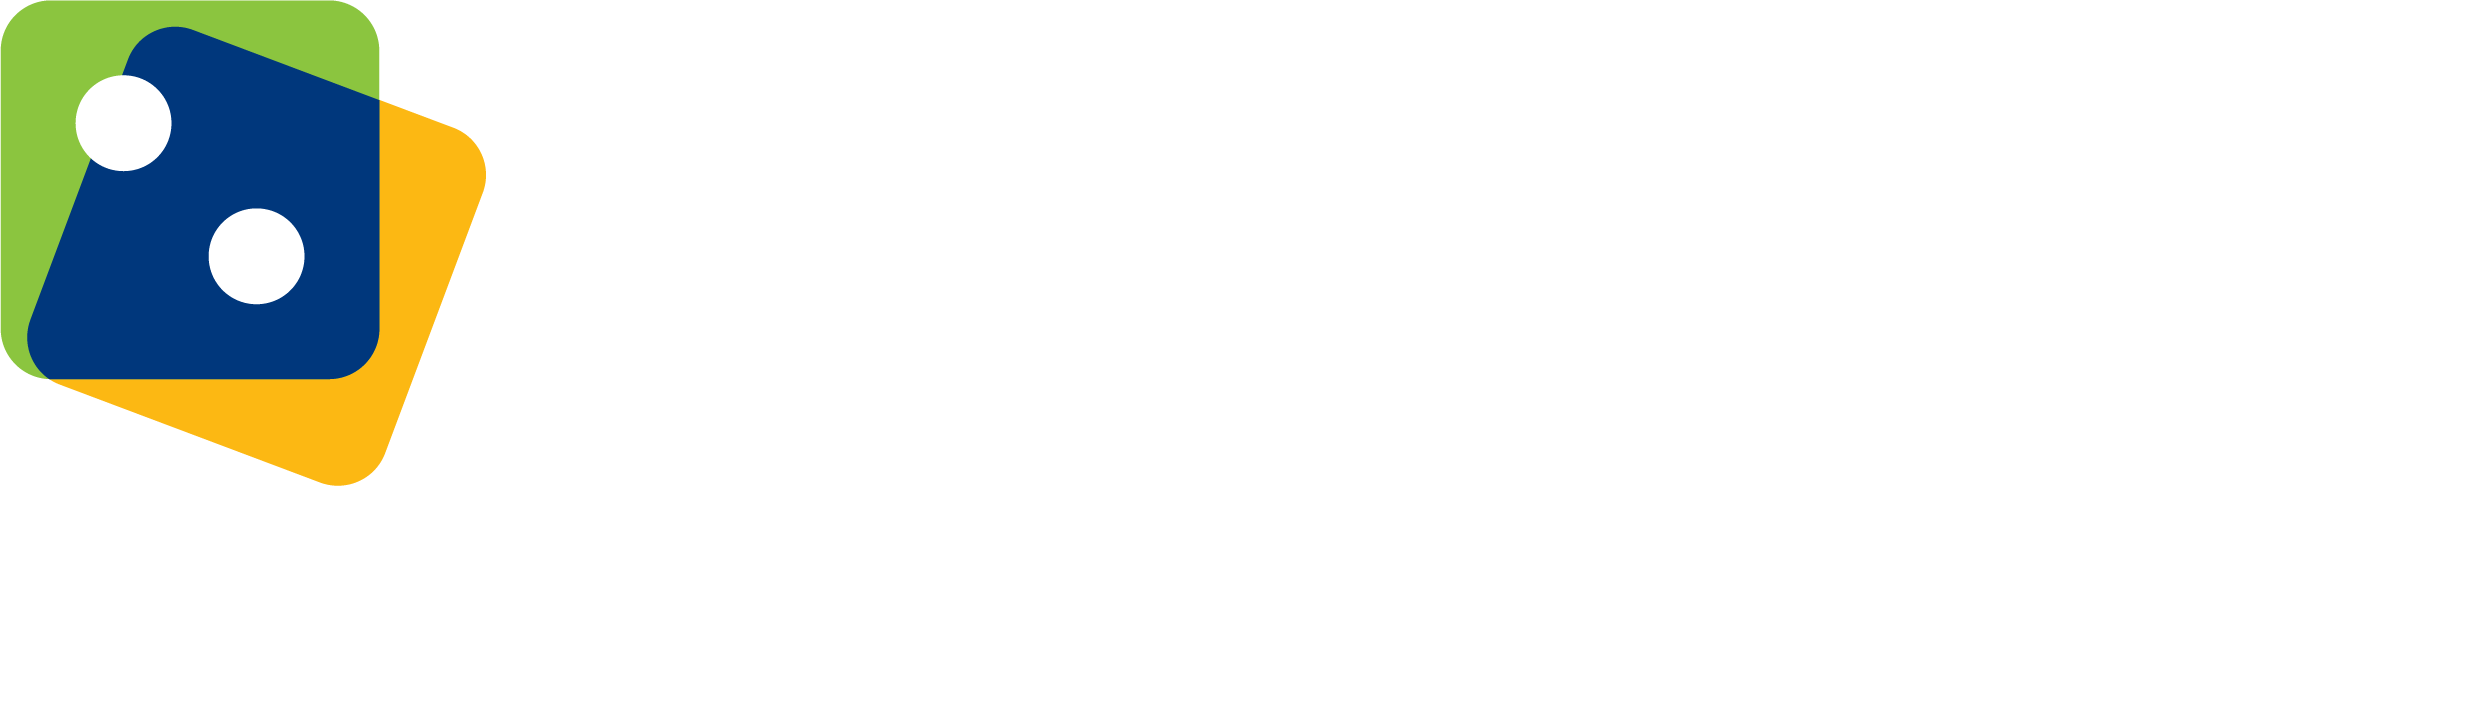 iGaming Ontario Logo